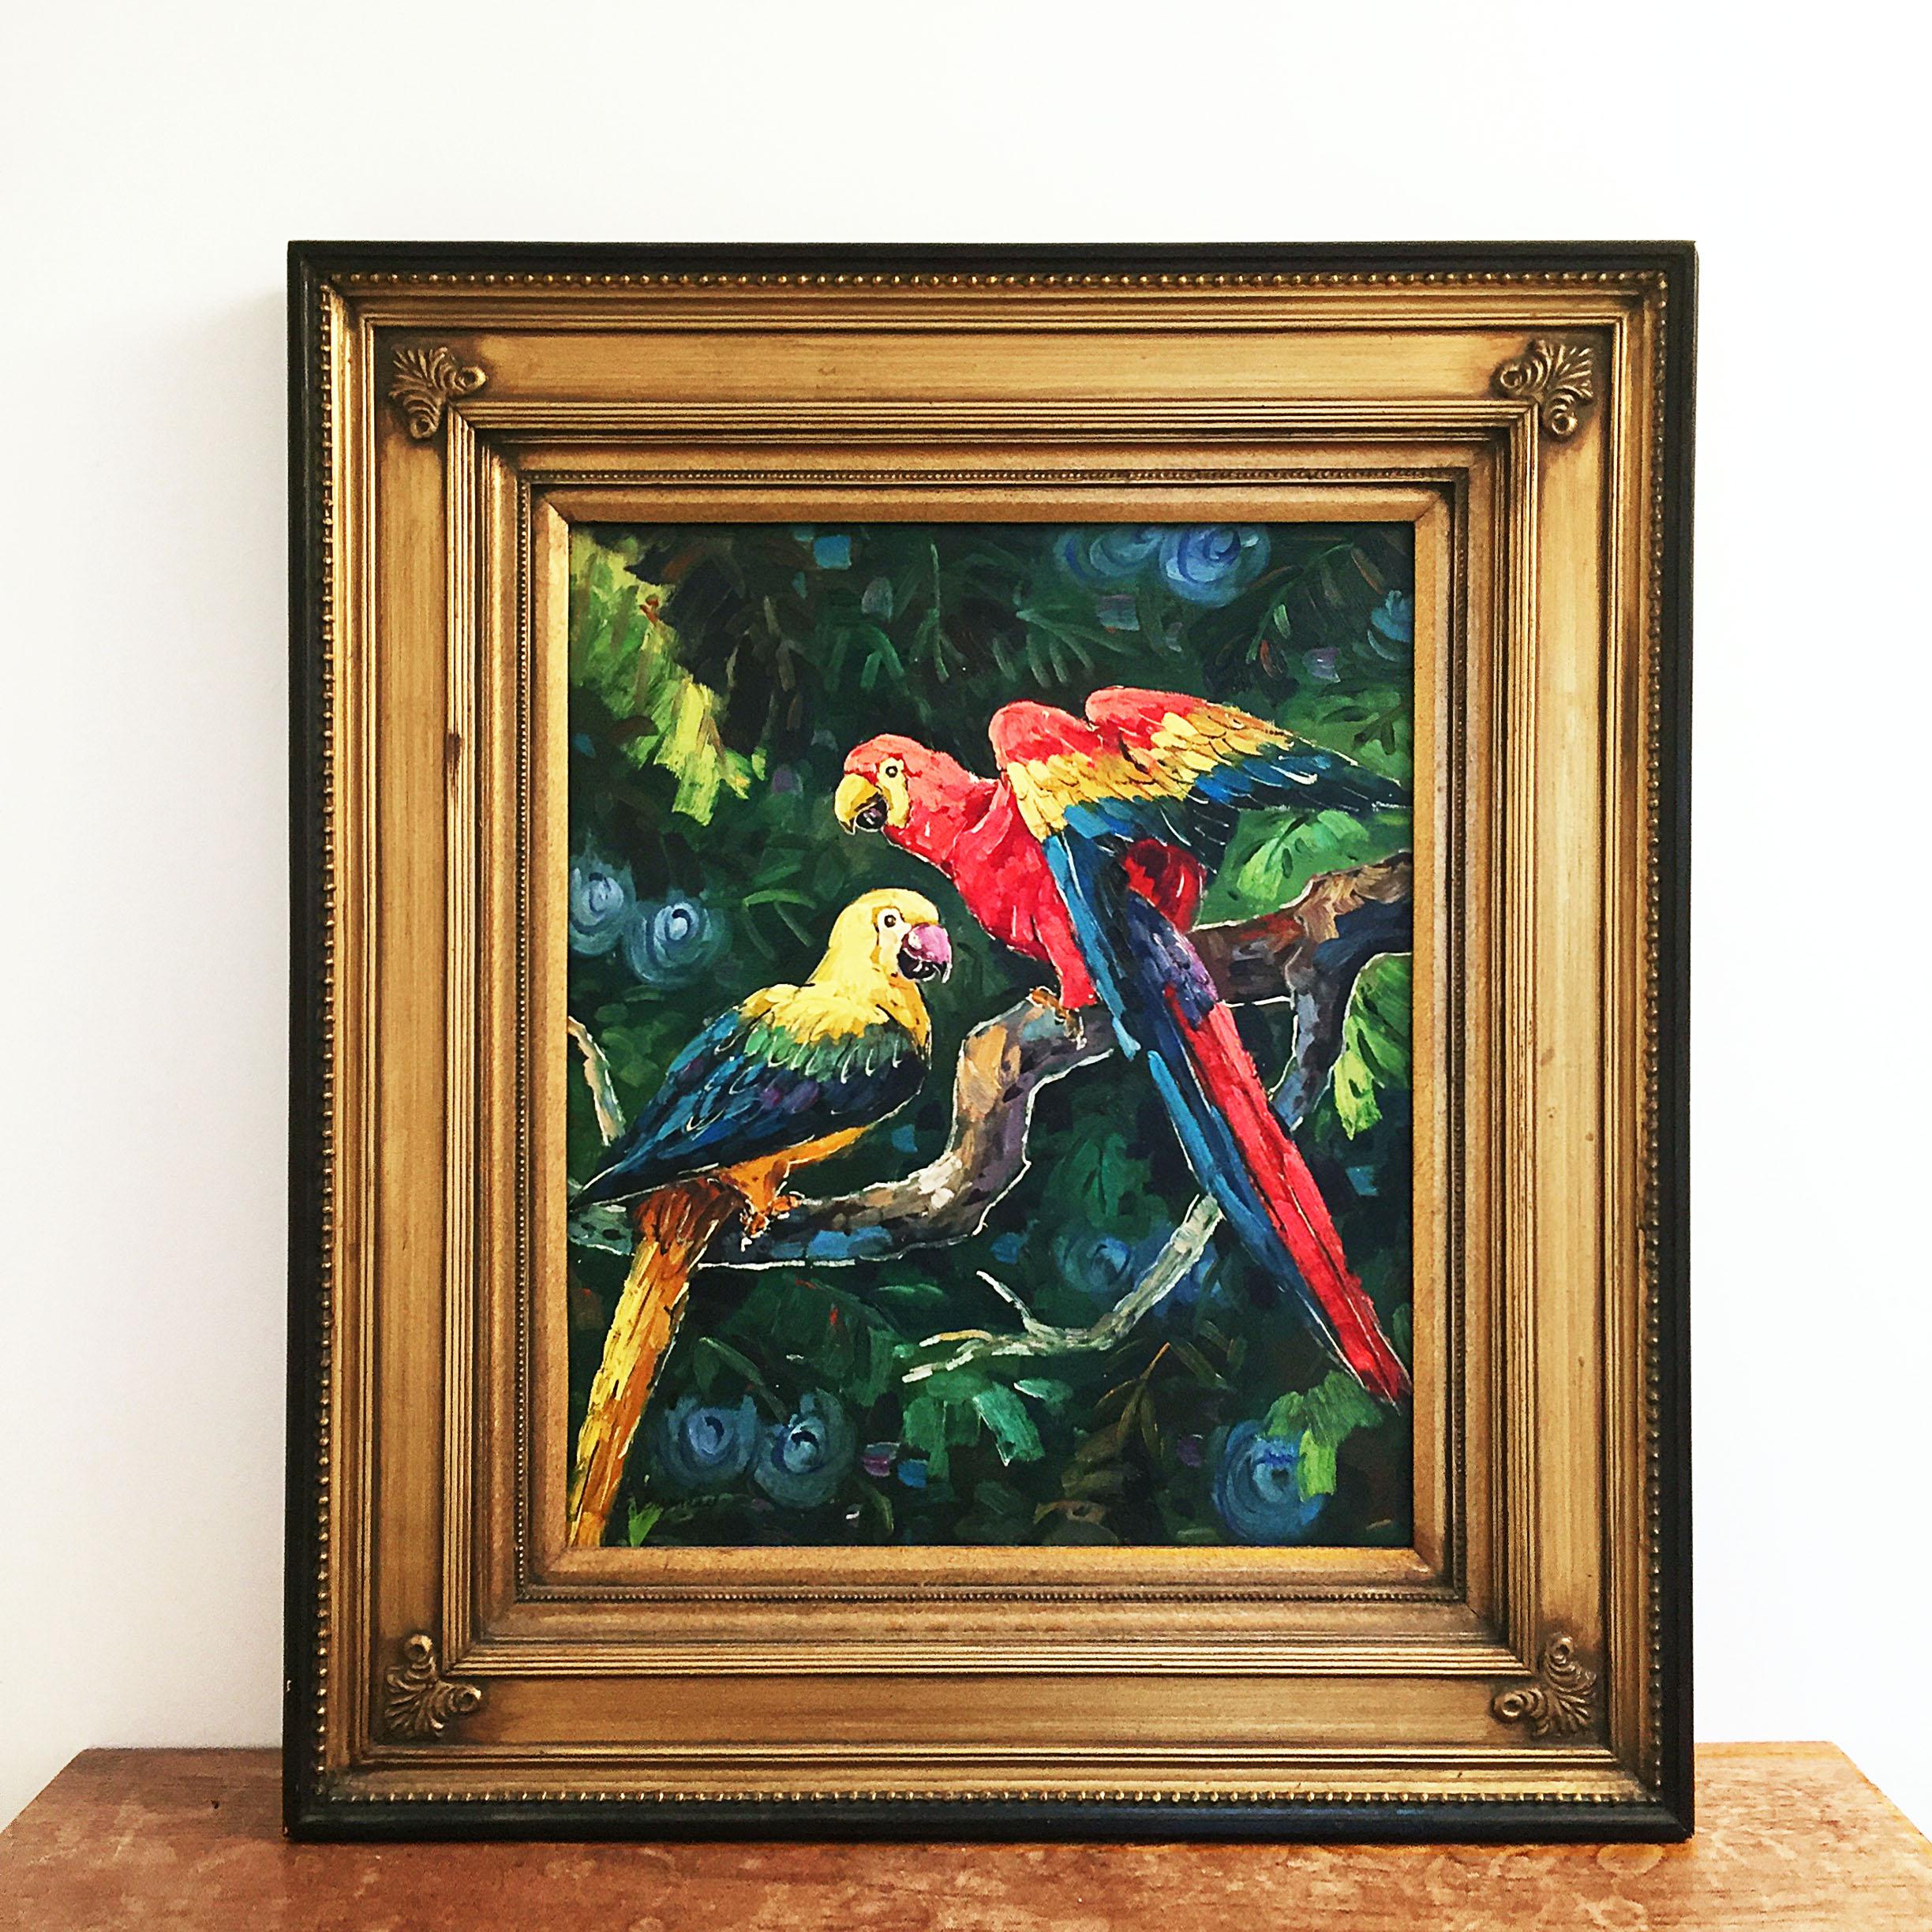 Une belle peinture exotique à l'huile sur toile représentant deux perroquets dans une jungle. Des couleurs vibrantes brossées au pinceau et encadrées dans un lourd cadre en bois doré et en plâtre. Fabriqué dans les années 1990 et signé de façon